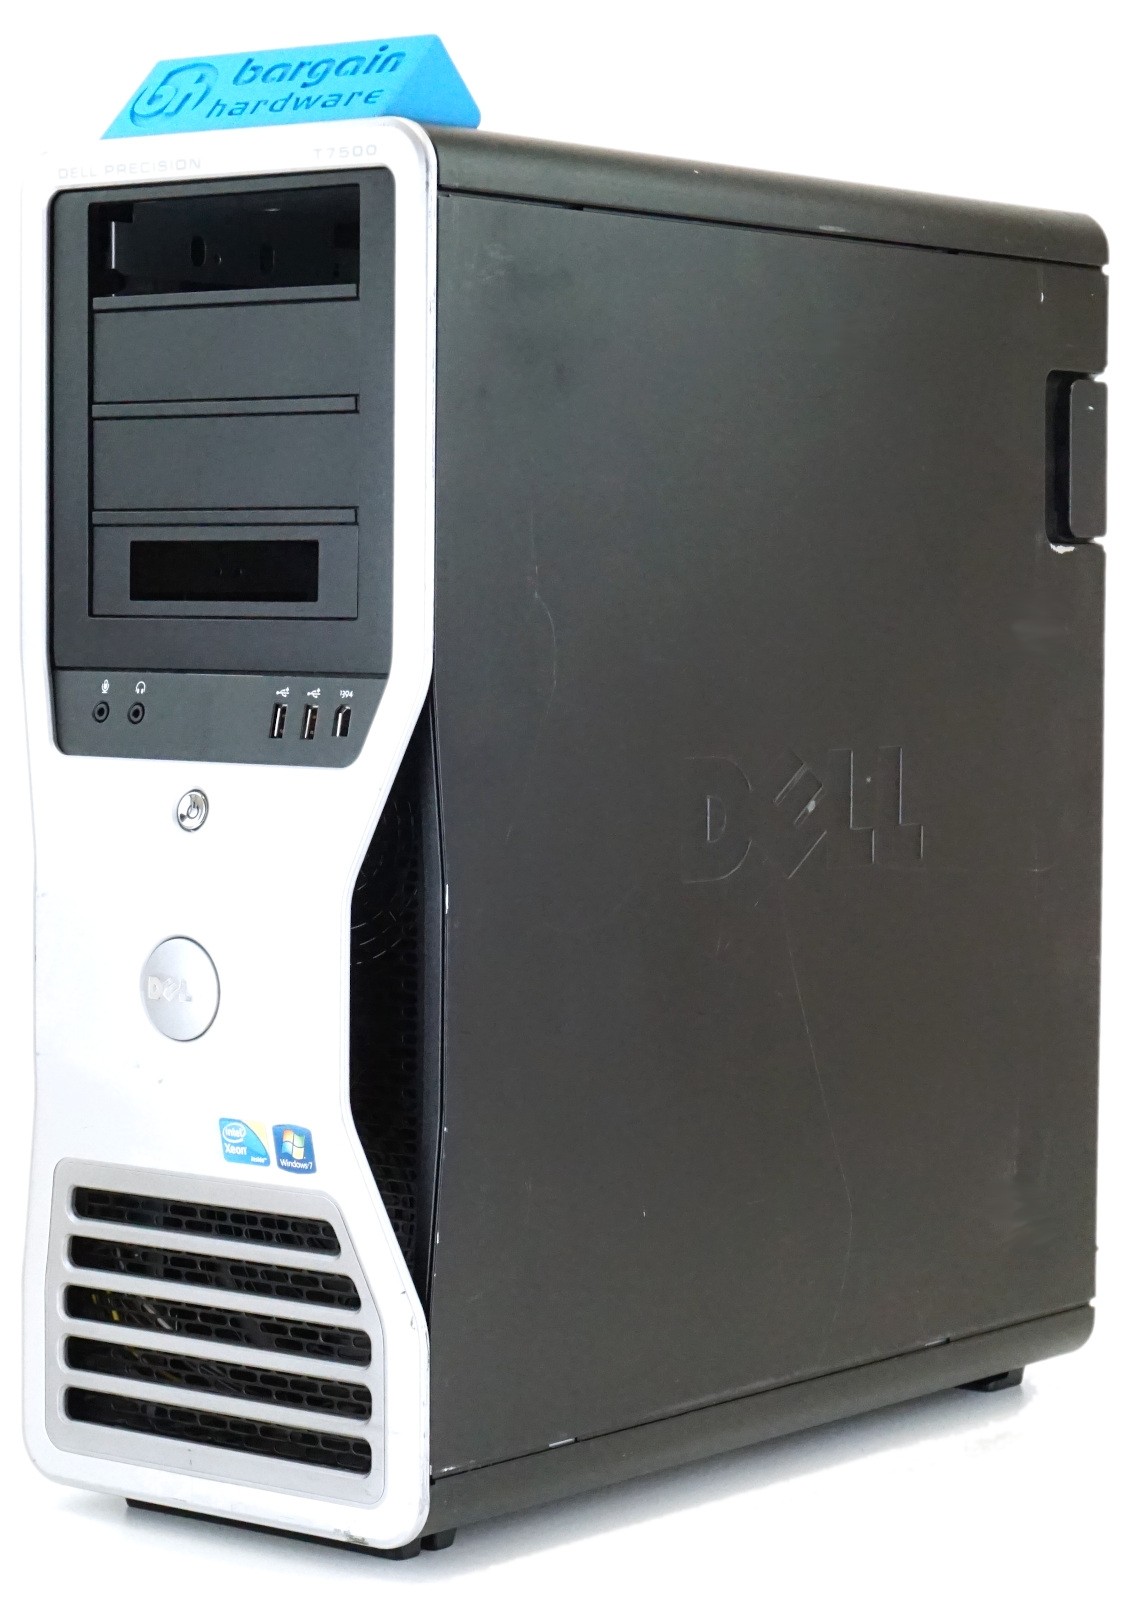 Dell Precision T7500 Tower - 1100W PSU (Grade B) Barebones Workstation